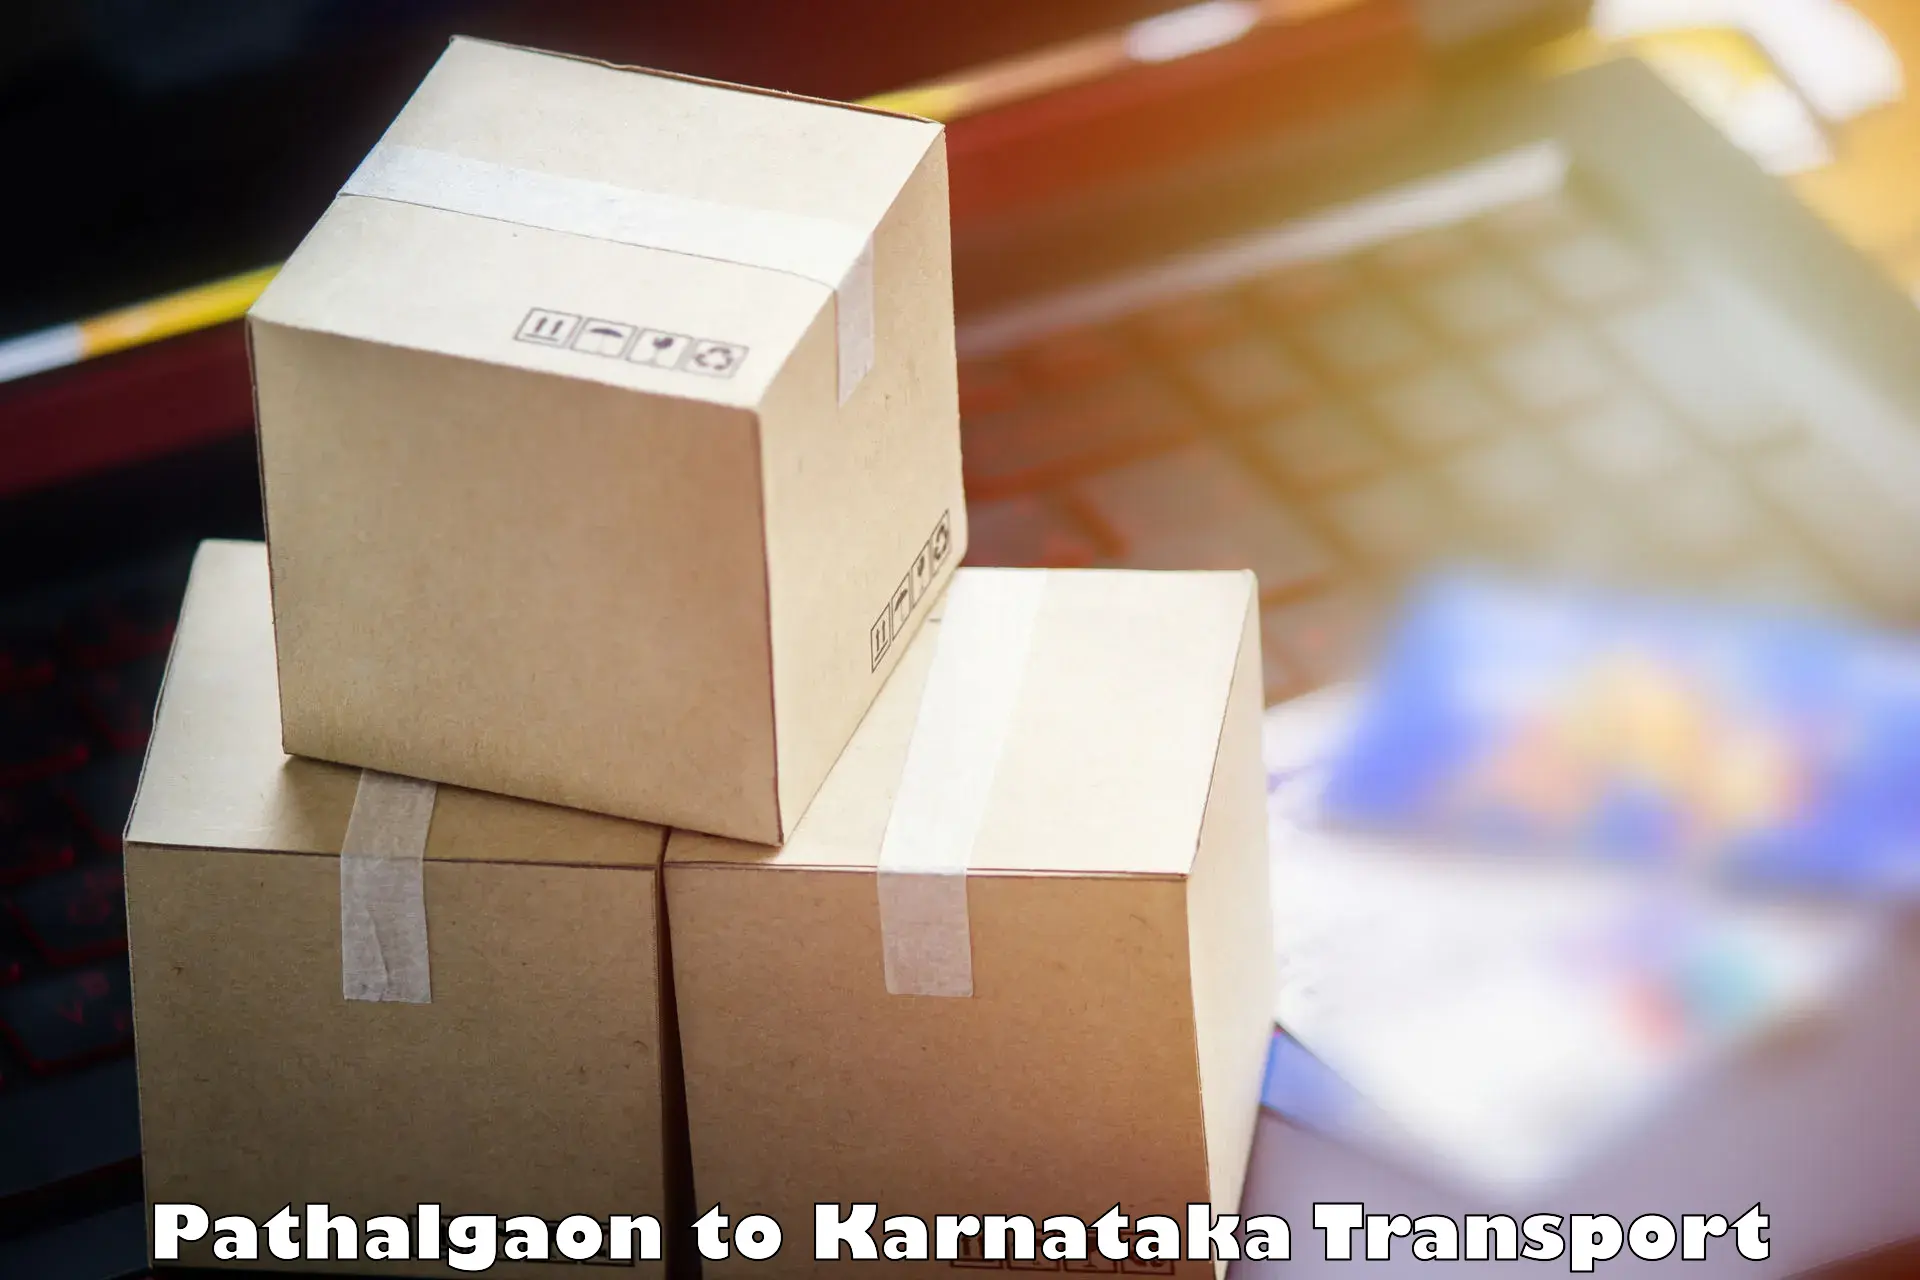 Express transport services Pathalgaon to Karnataka